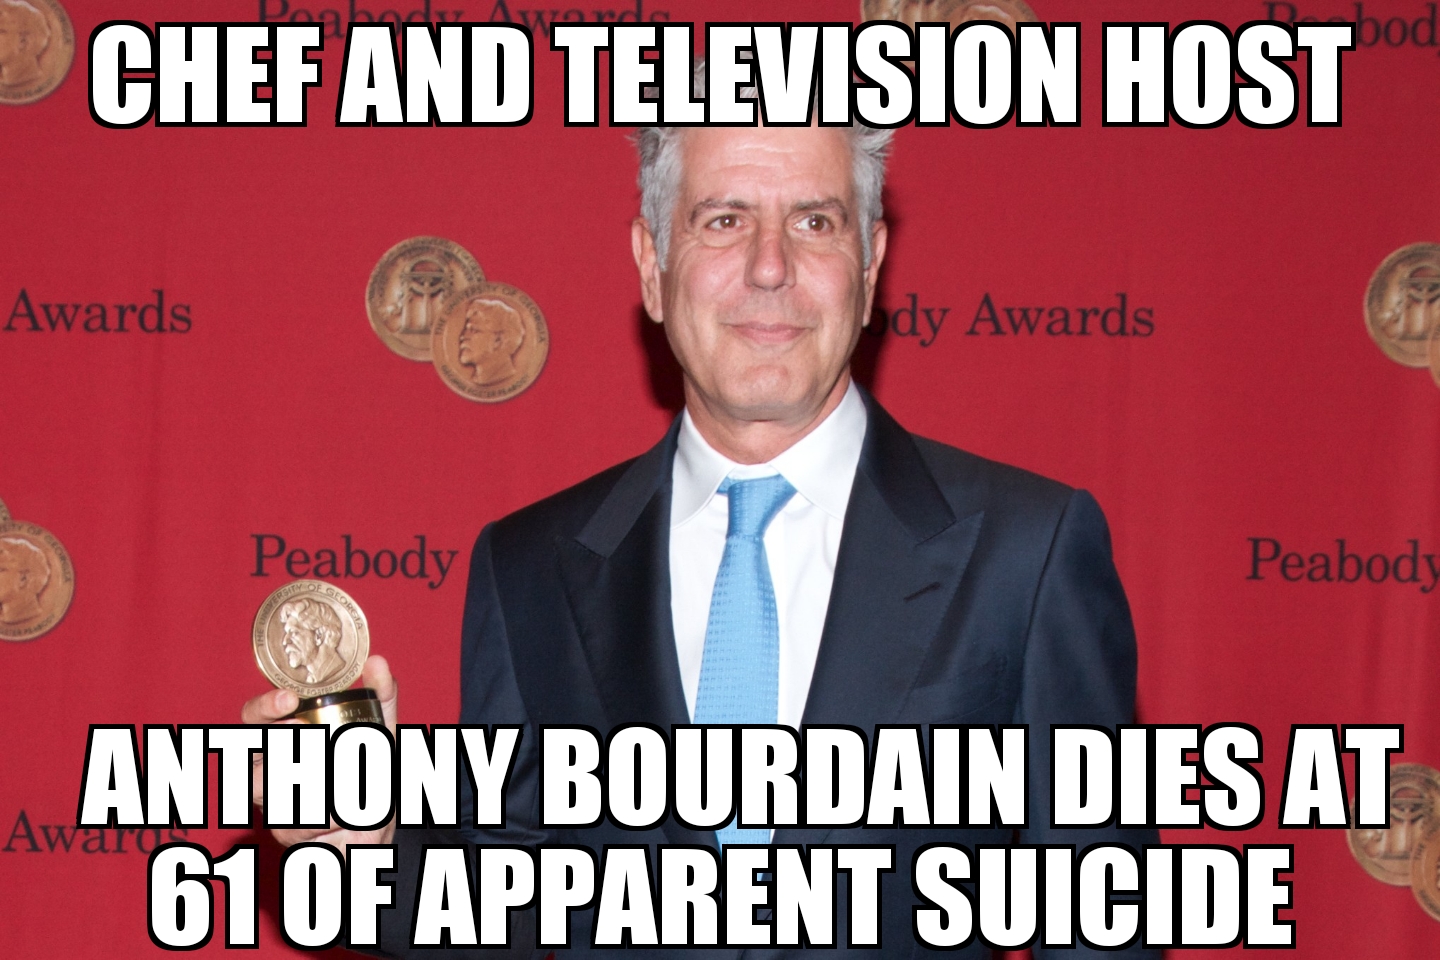 Anthony Bourdain dies